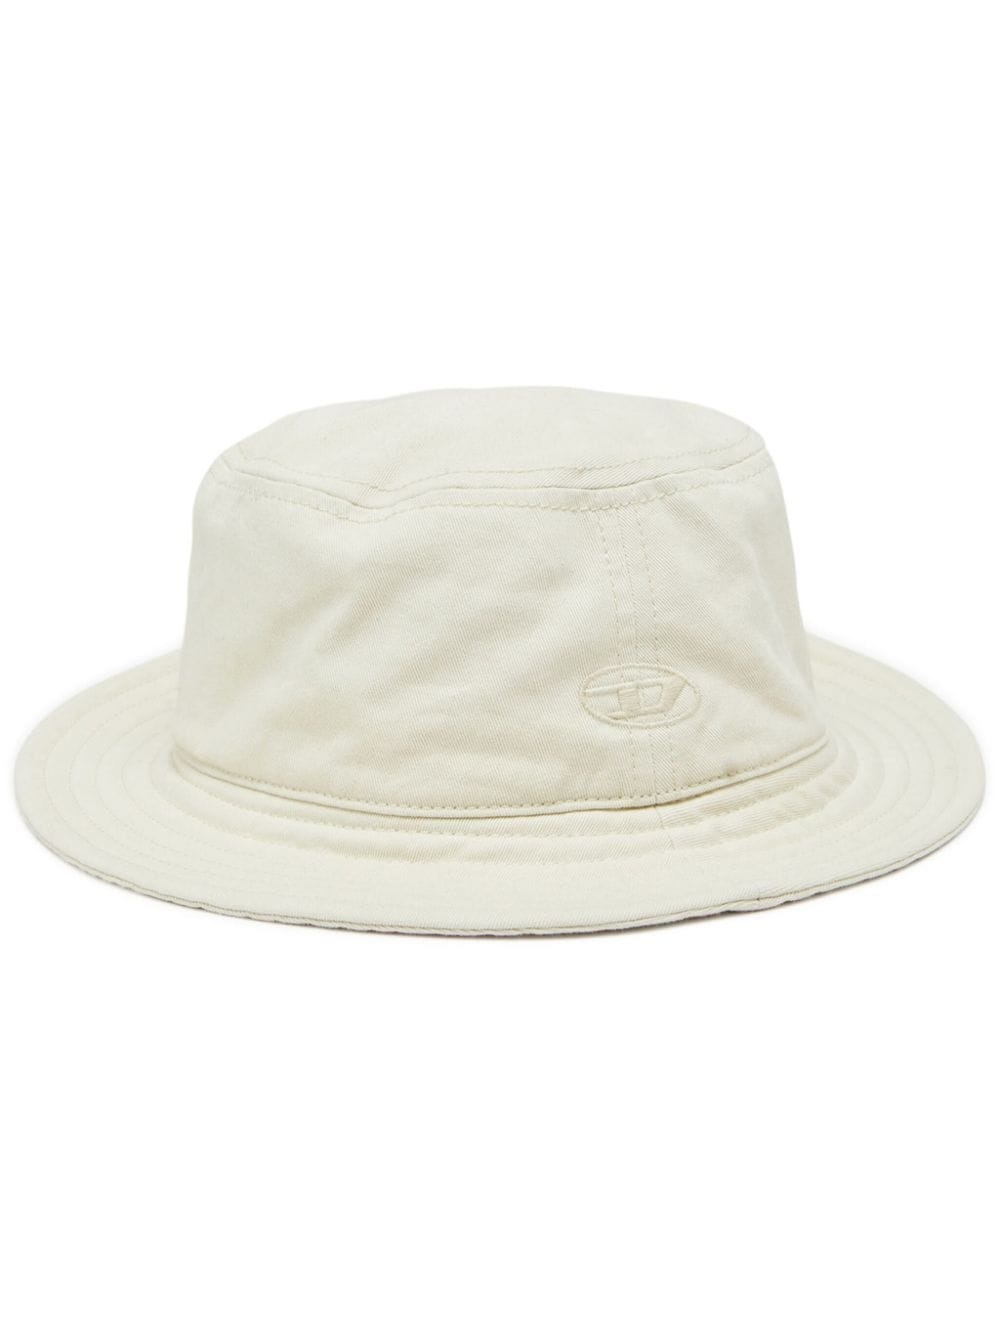 C-FISHER-WASH bucket hat - 1